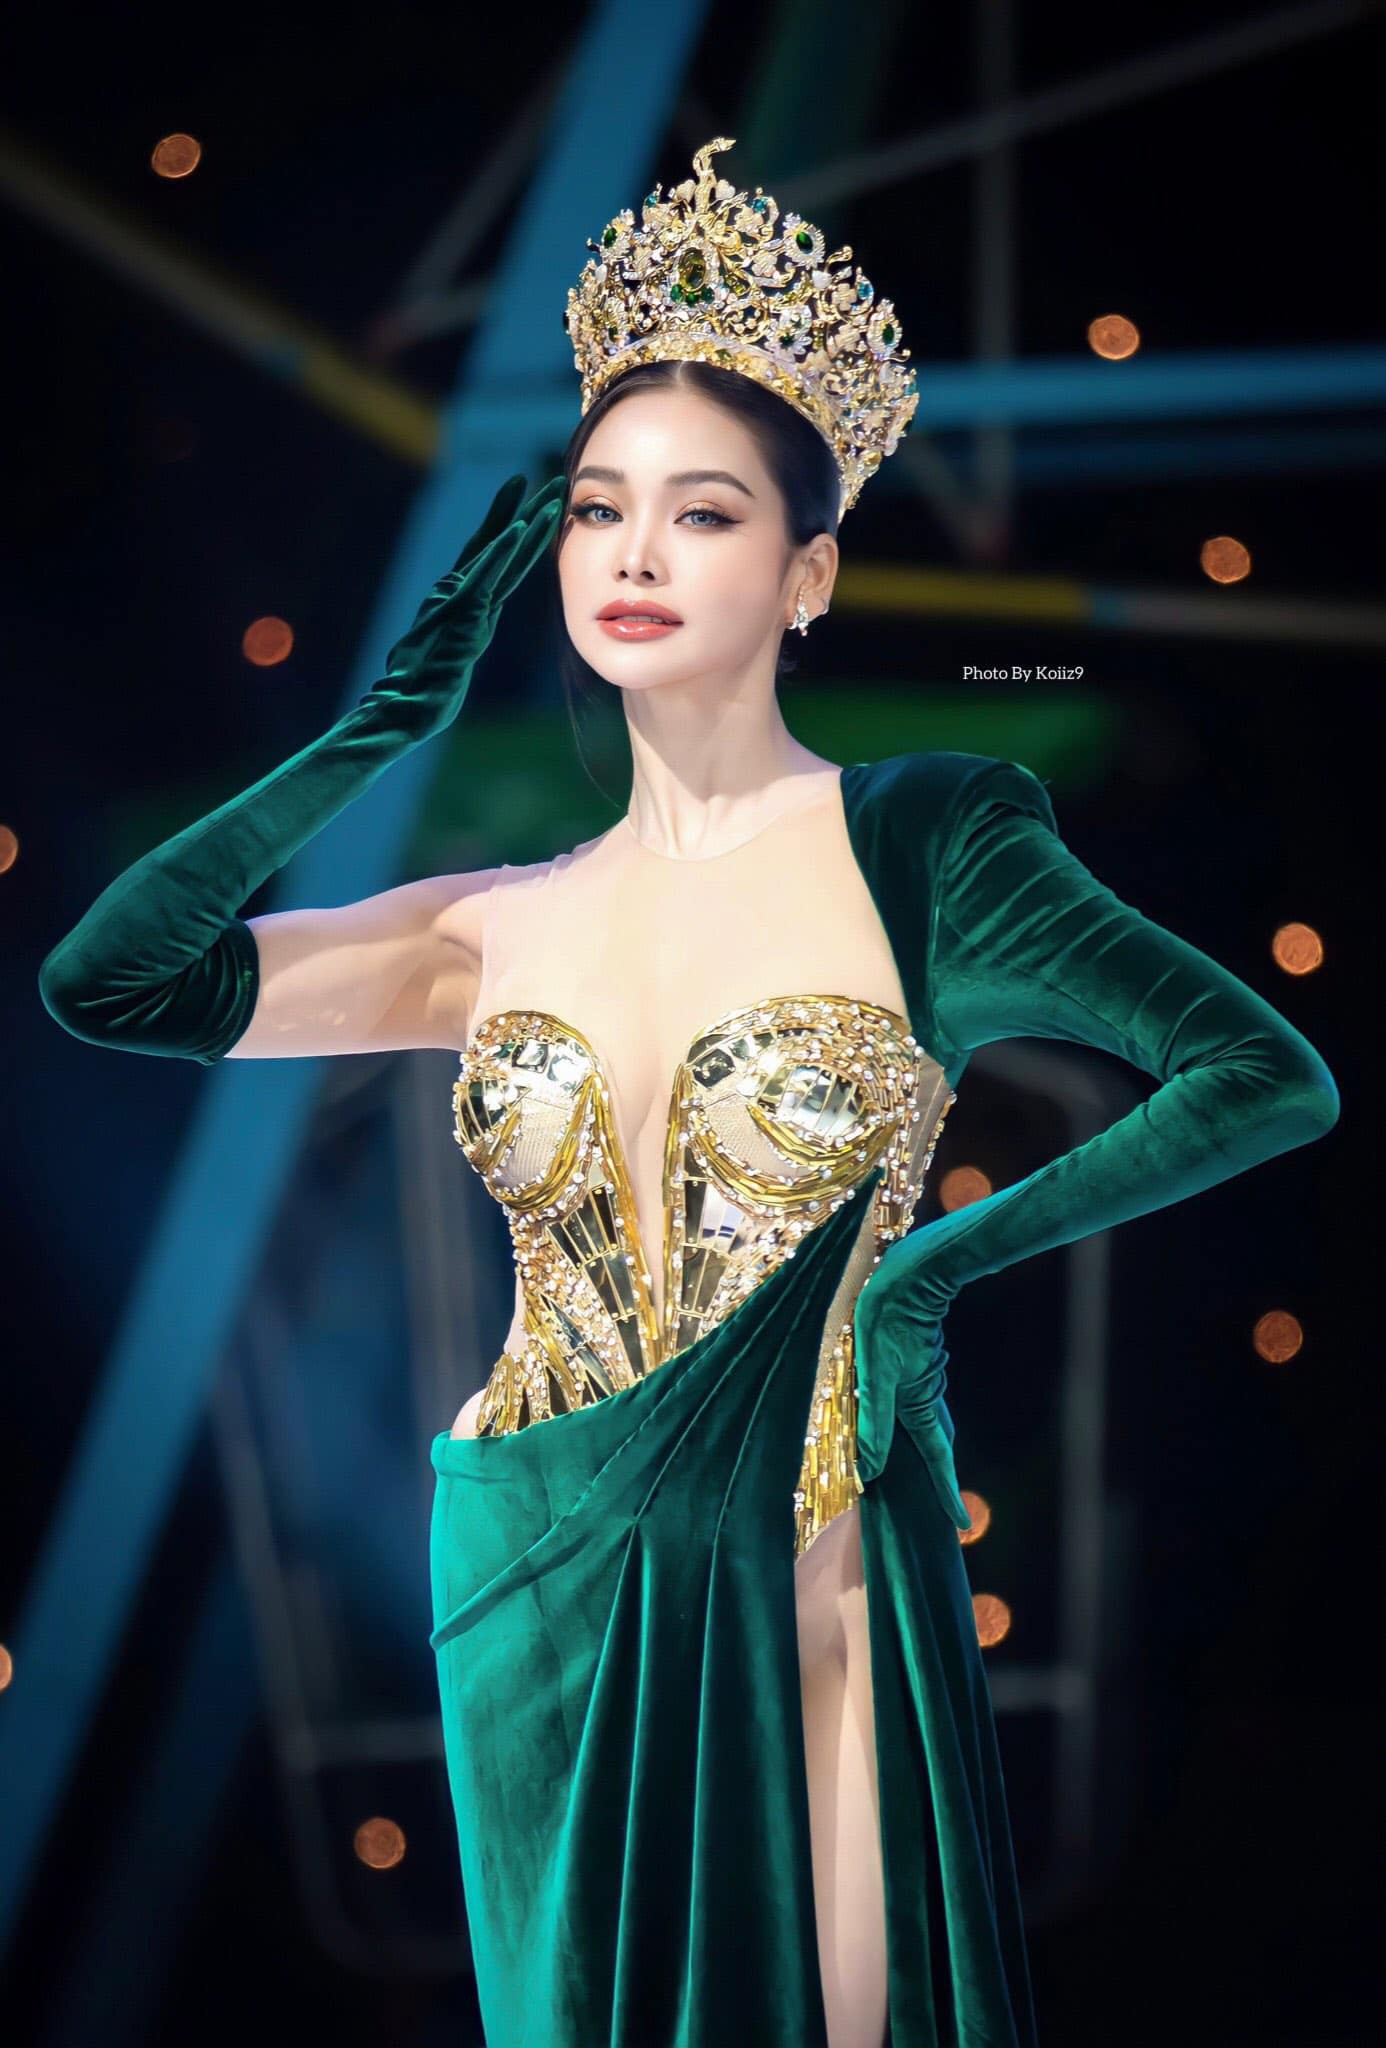 Hoa hậu Hòa bình Thái Lan bị chỉ trích vì mặc váy hở nội y - Ảnh 2.